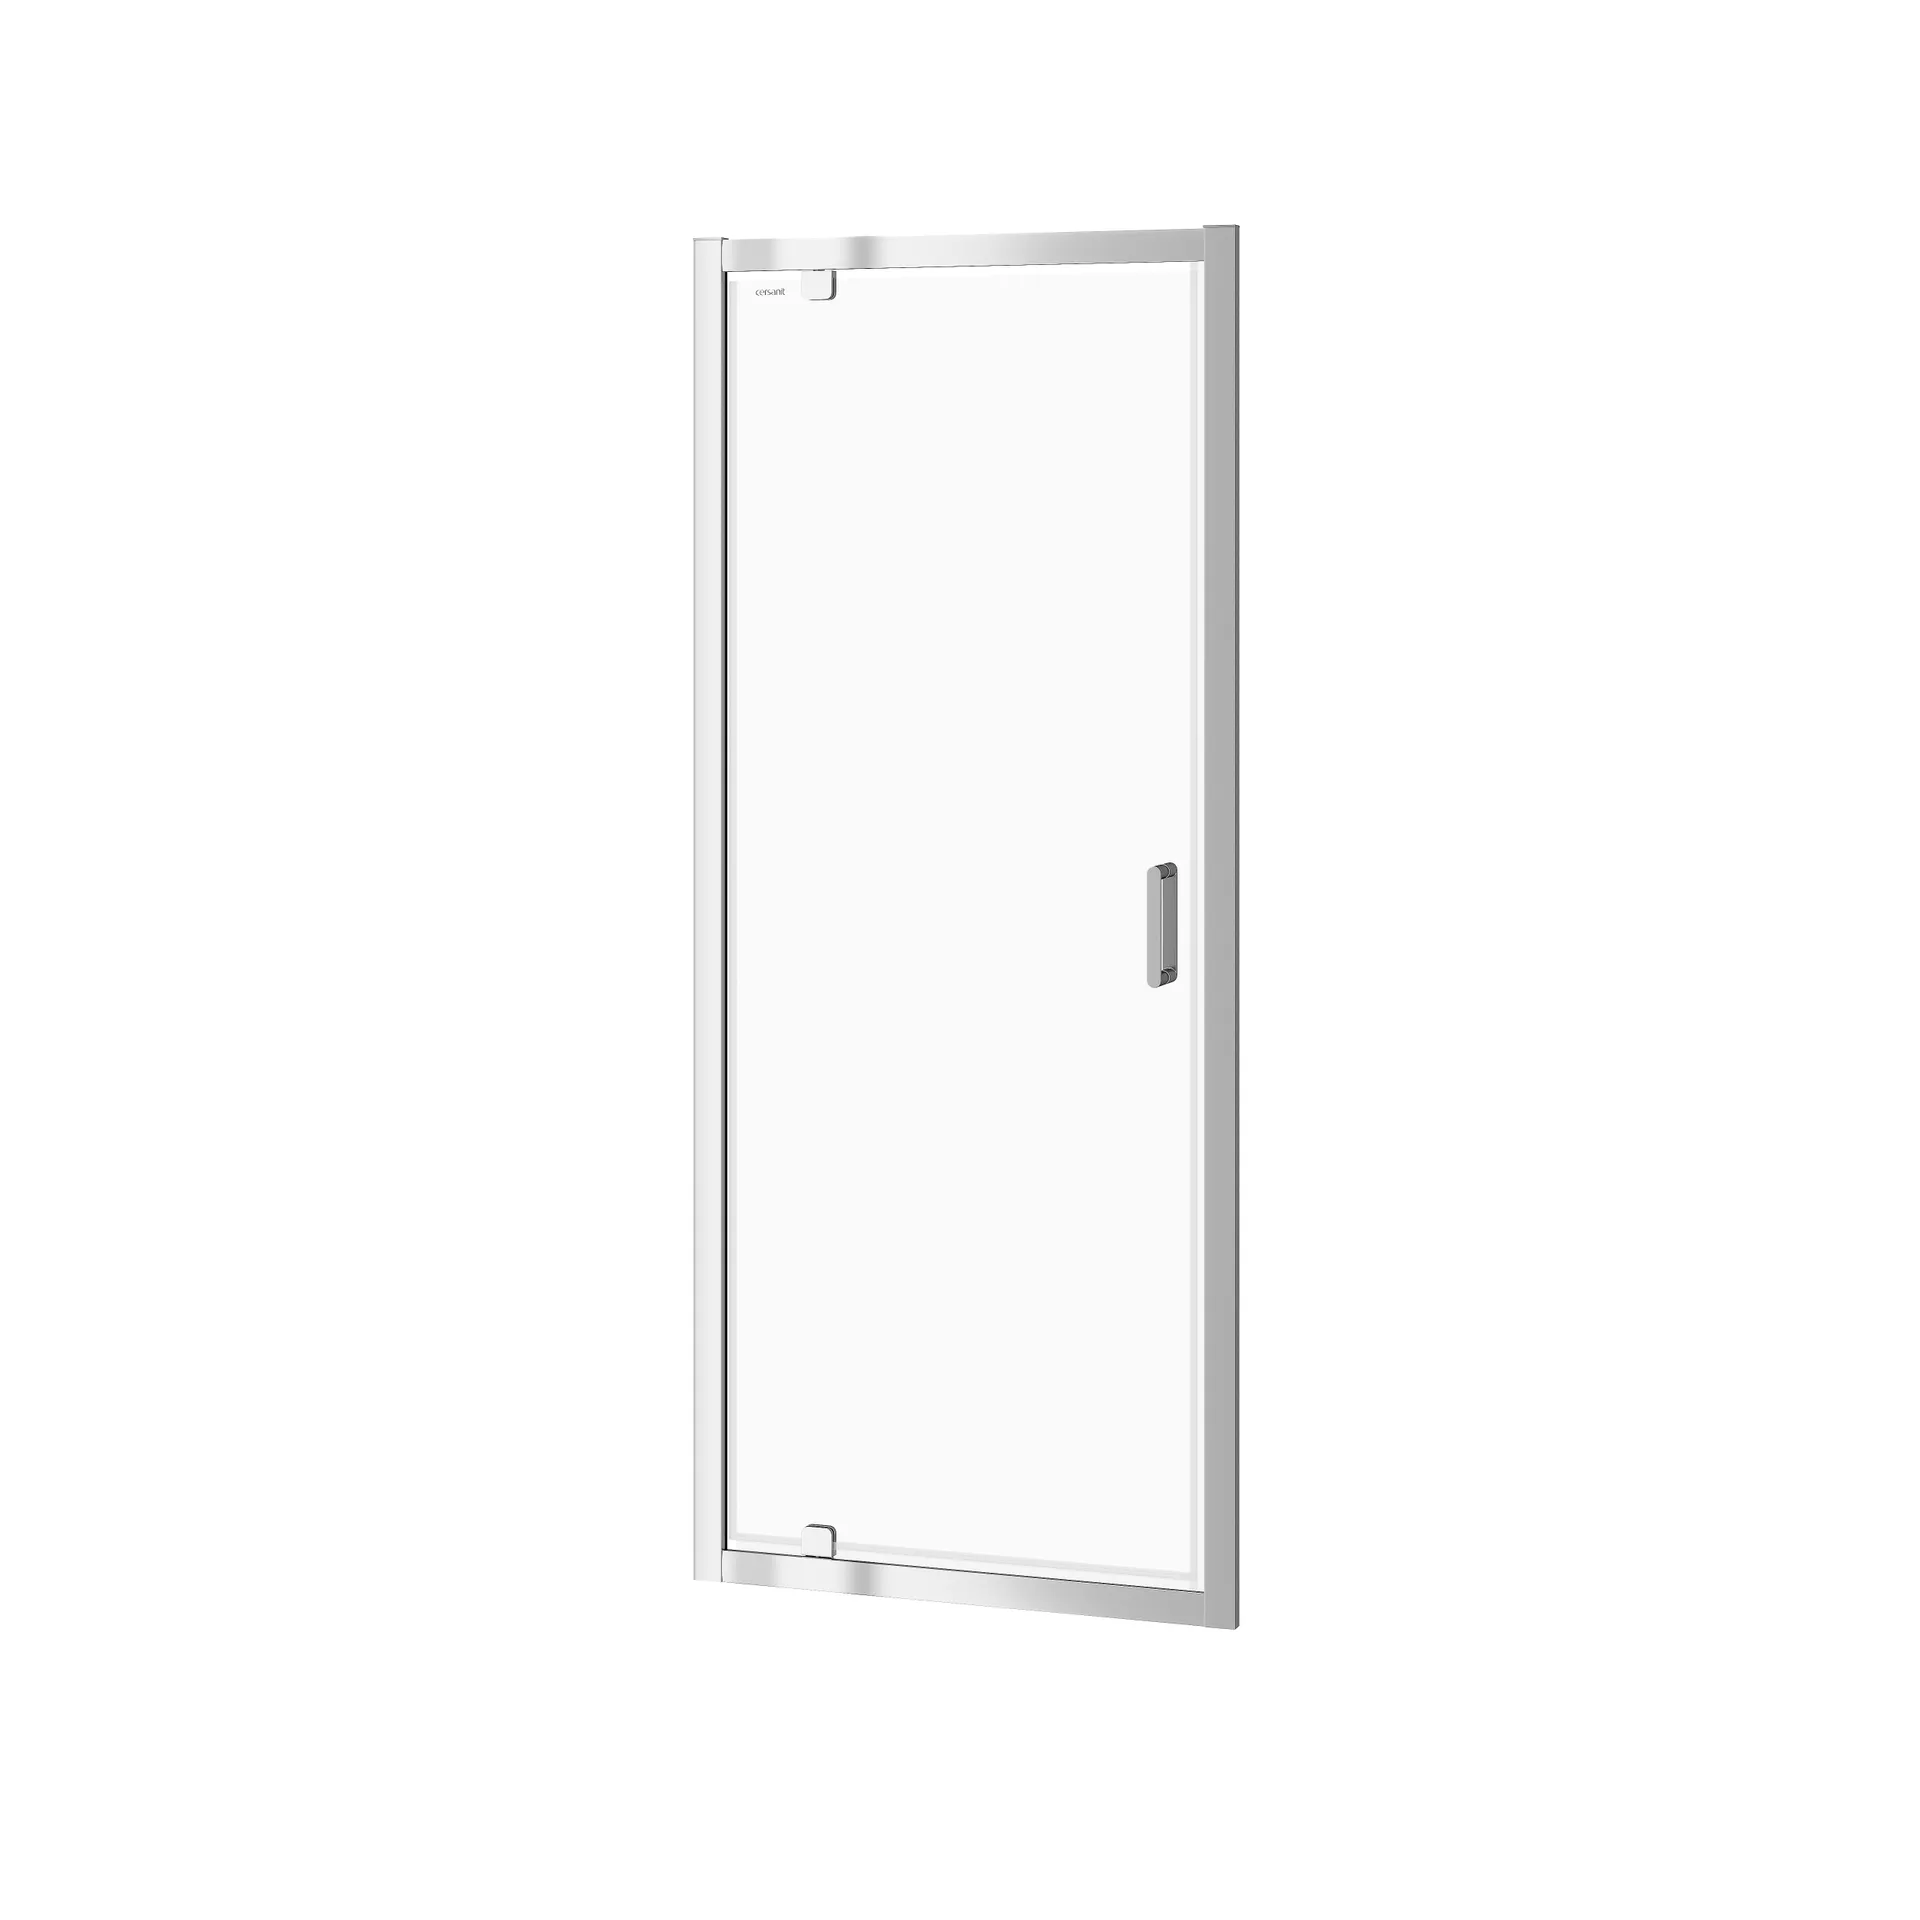 Drzwi prysznicowe Cersanit Arteco 80X190 chrom transparentne S157-007